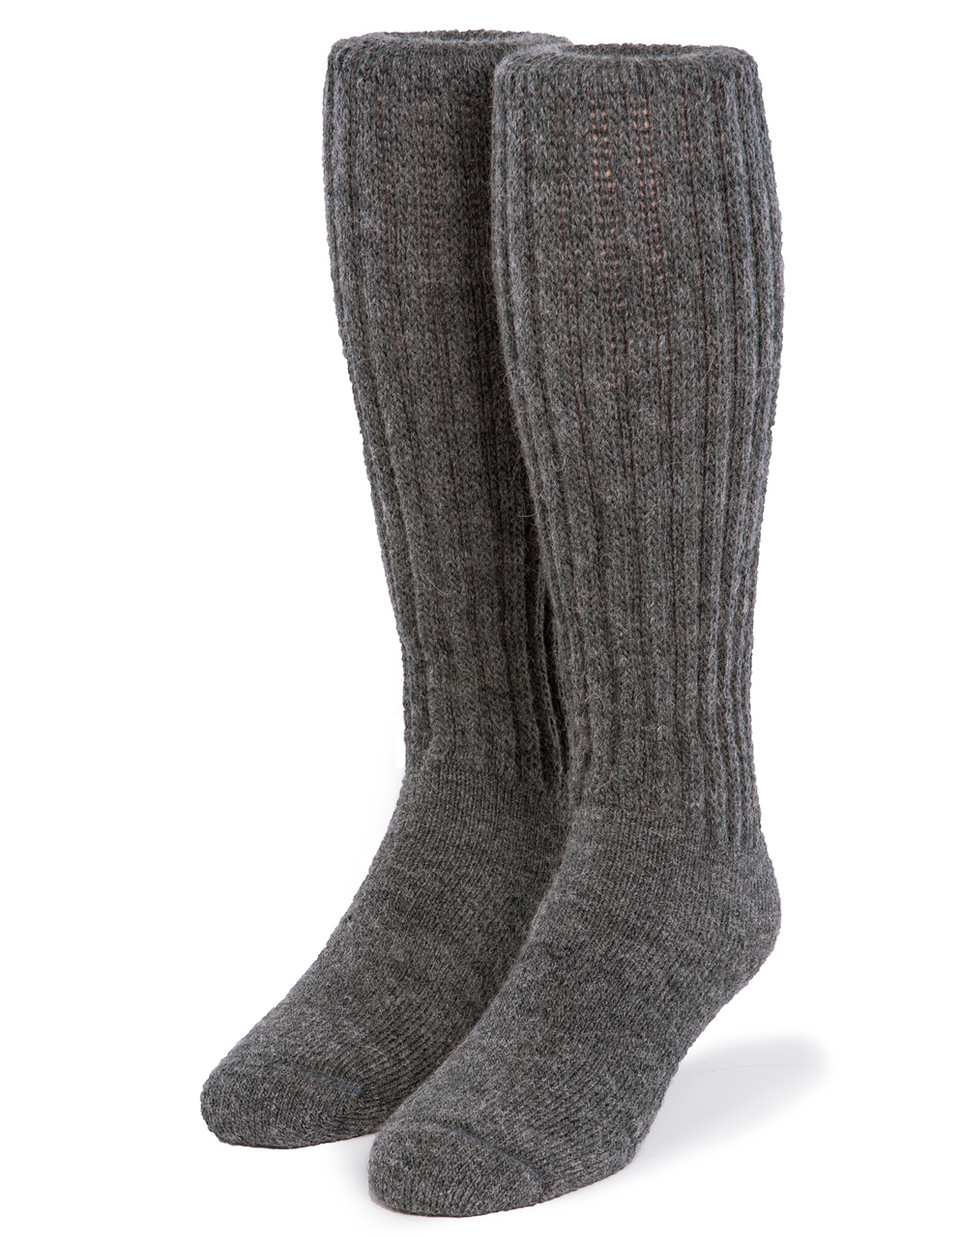 Thick Alpaca Wool Boot Socks - Warrior Alpaca Socks